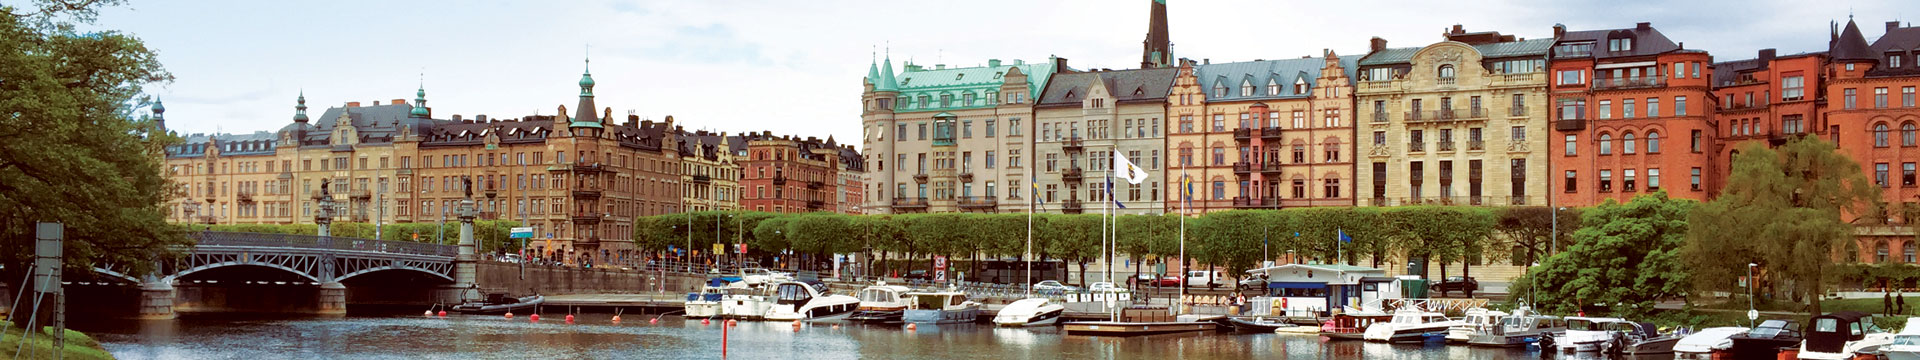 Sweden buildings